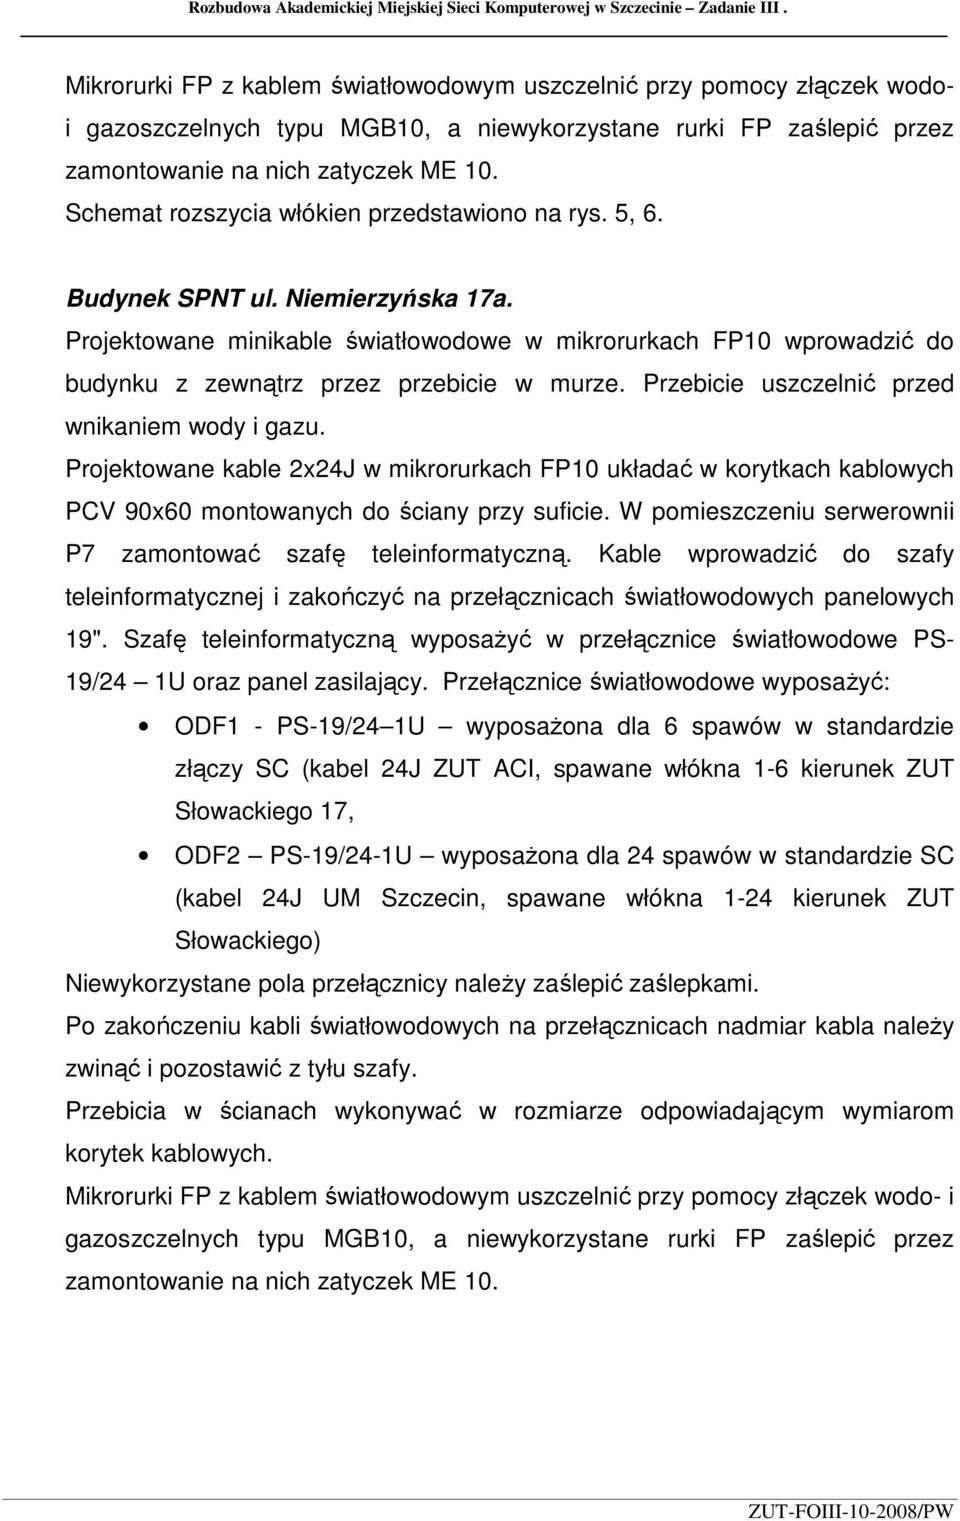 Schemat rozszycia włókien przedstawiono na rys. 5, 6. Budynek SPNT ul. Niemierzyńska 17a.